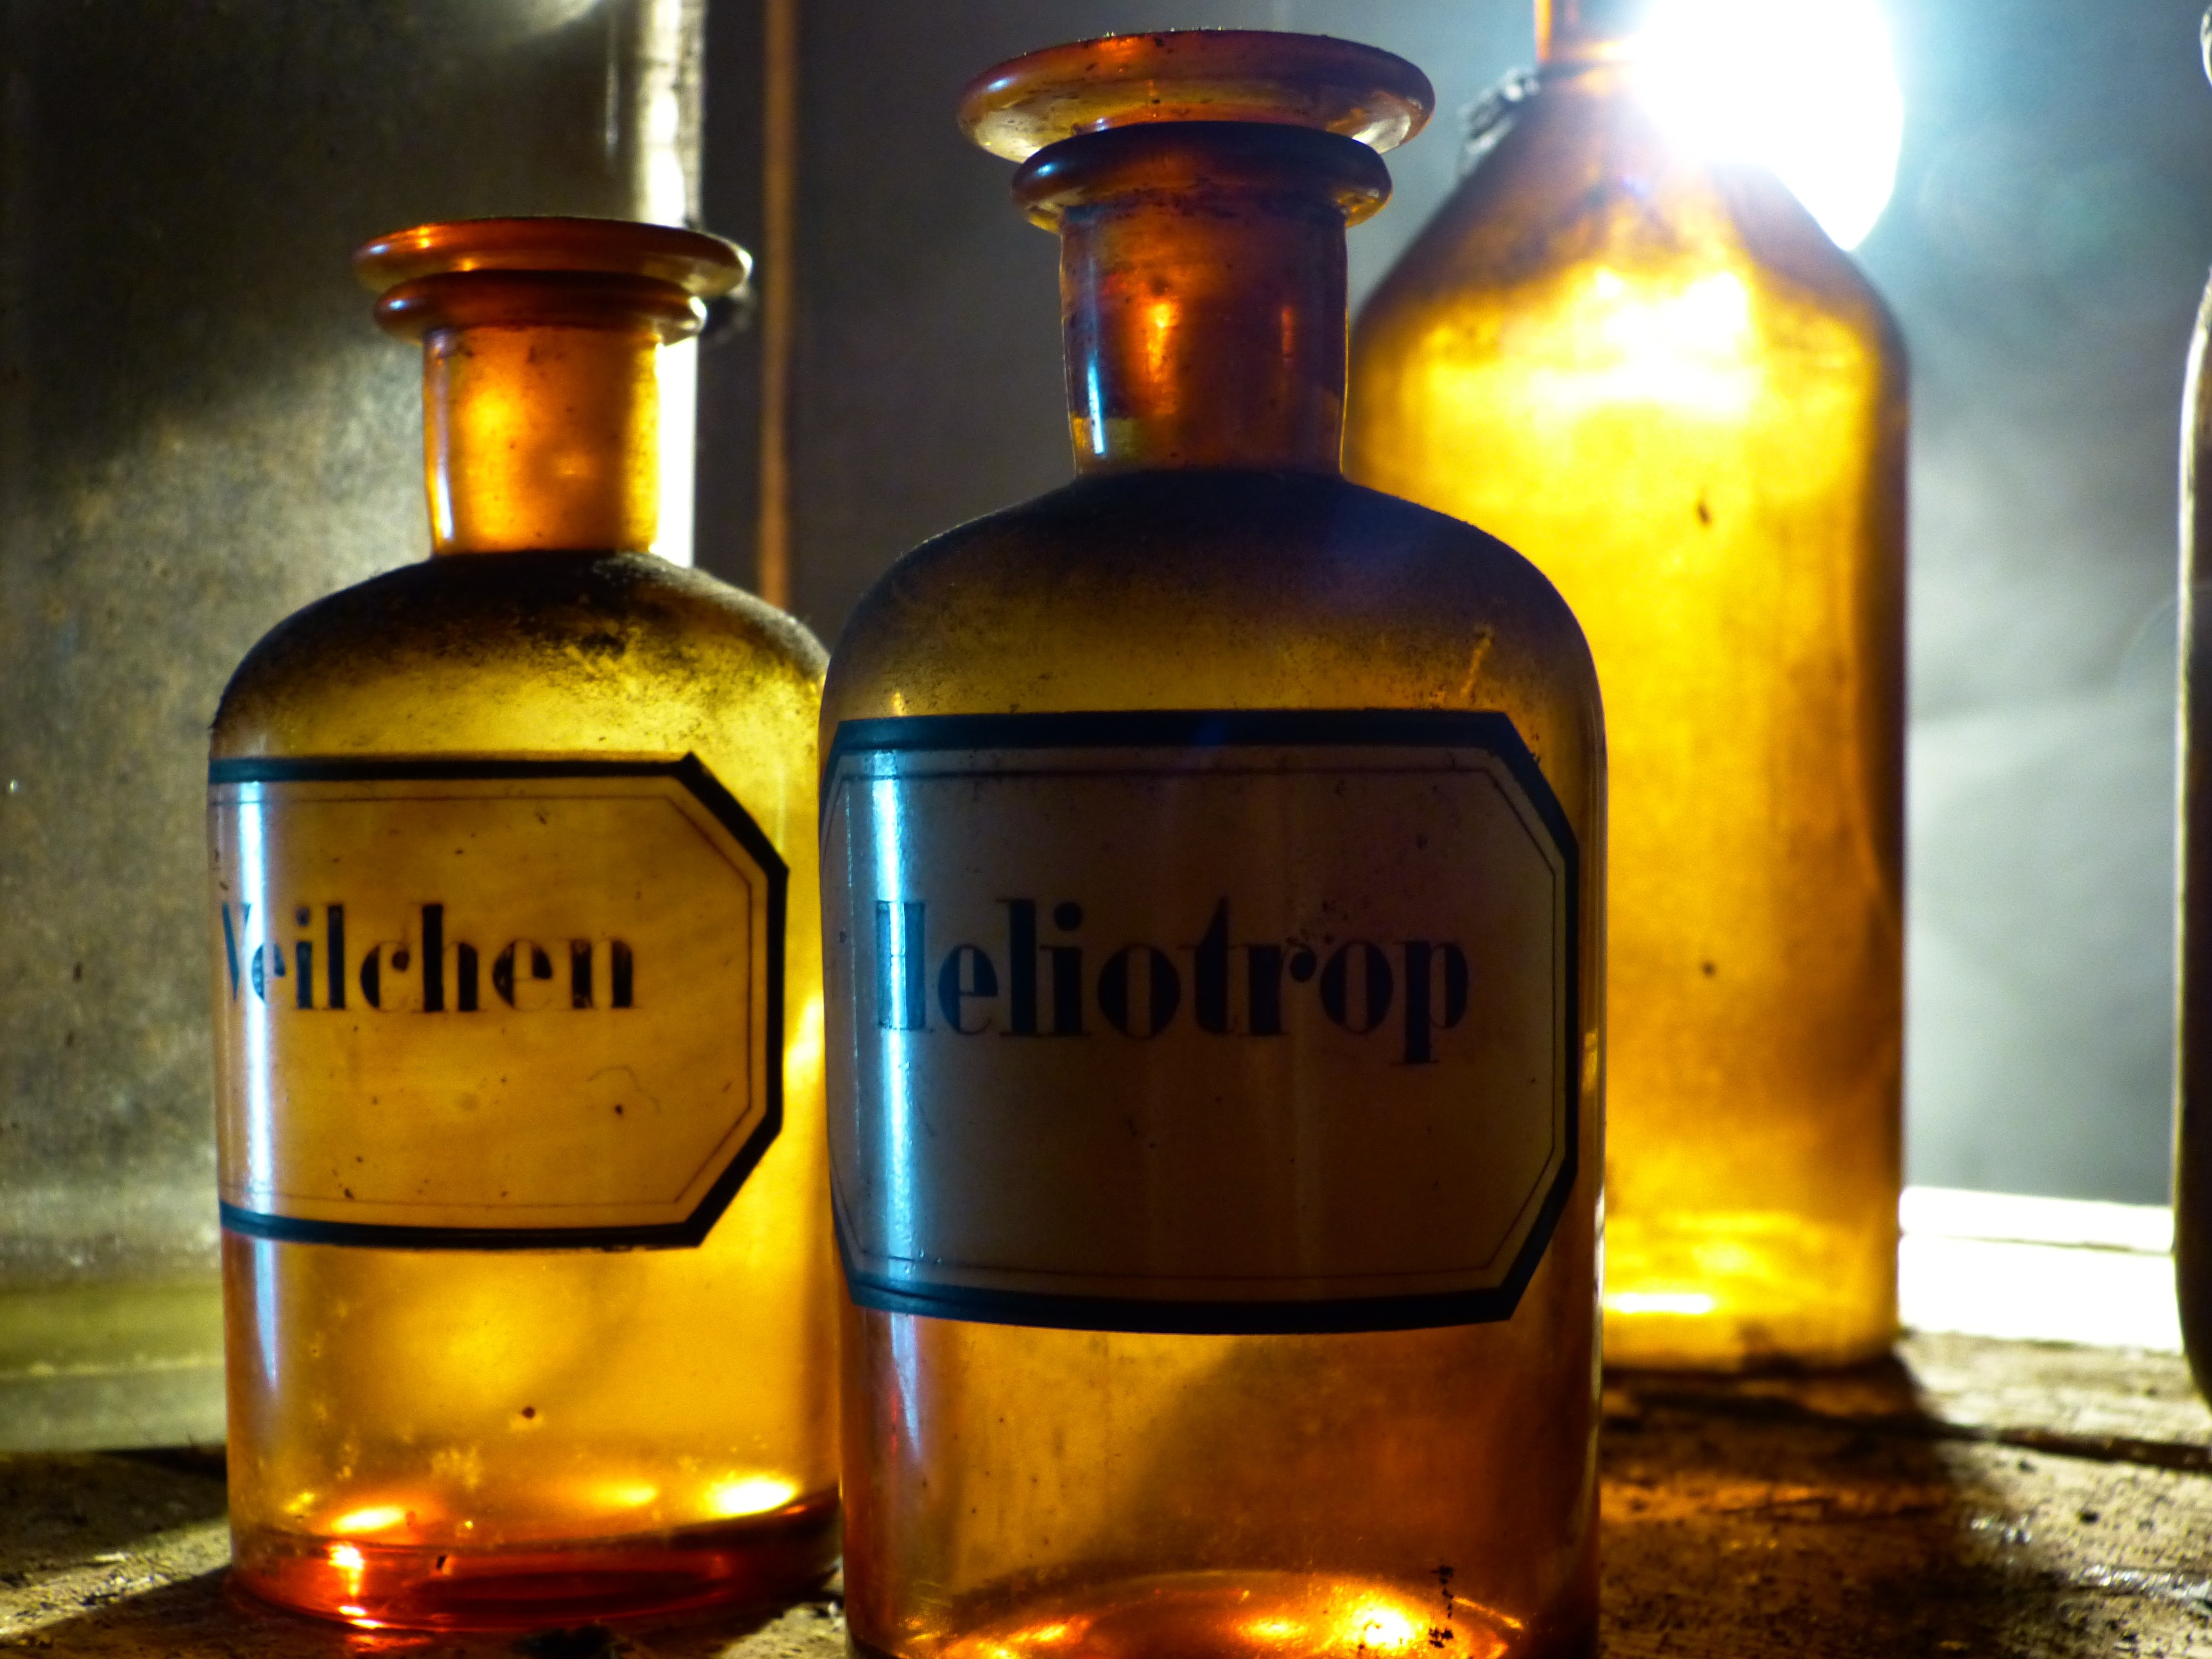 Glass, Bottle, Old, Pharmacy Bottle, bottle, label